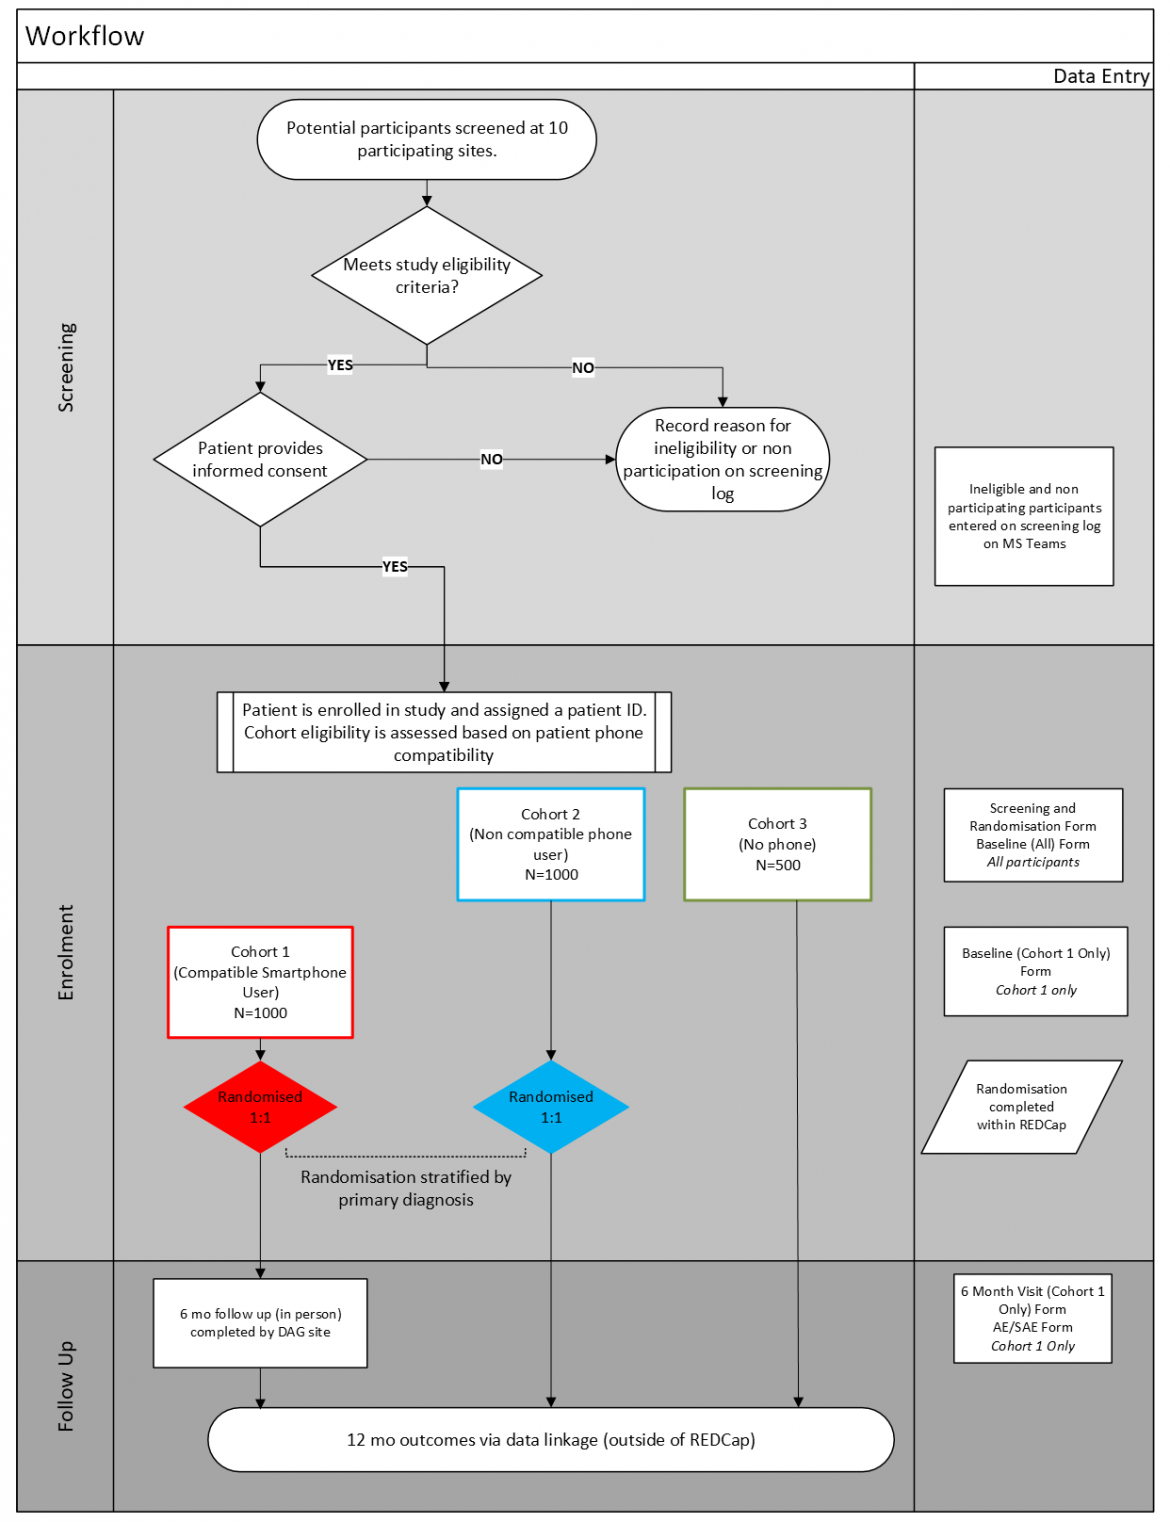 TCC Cardiac Governance Workflow